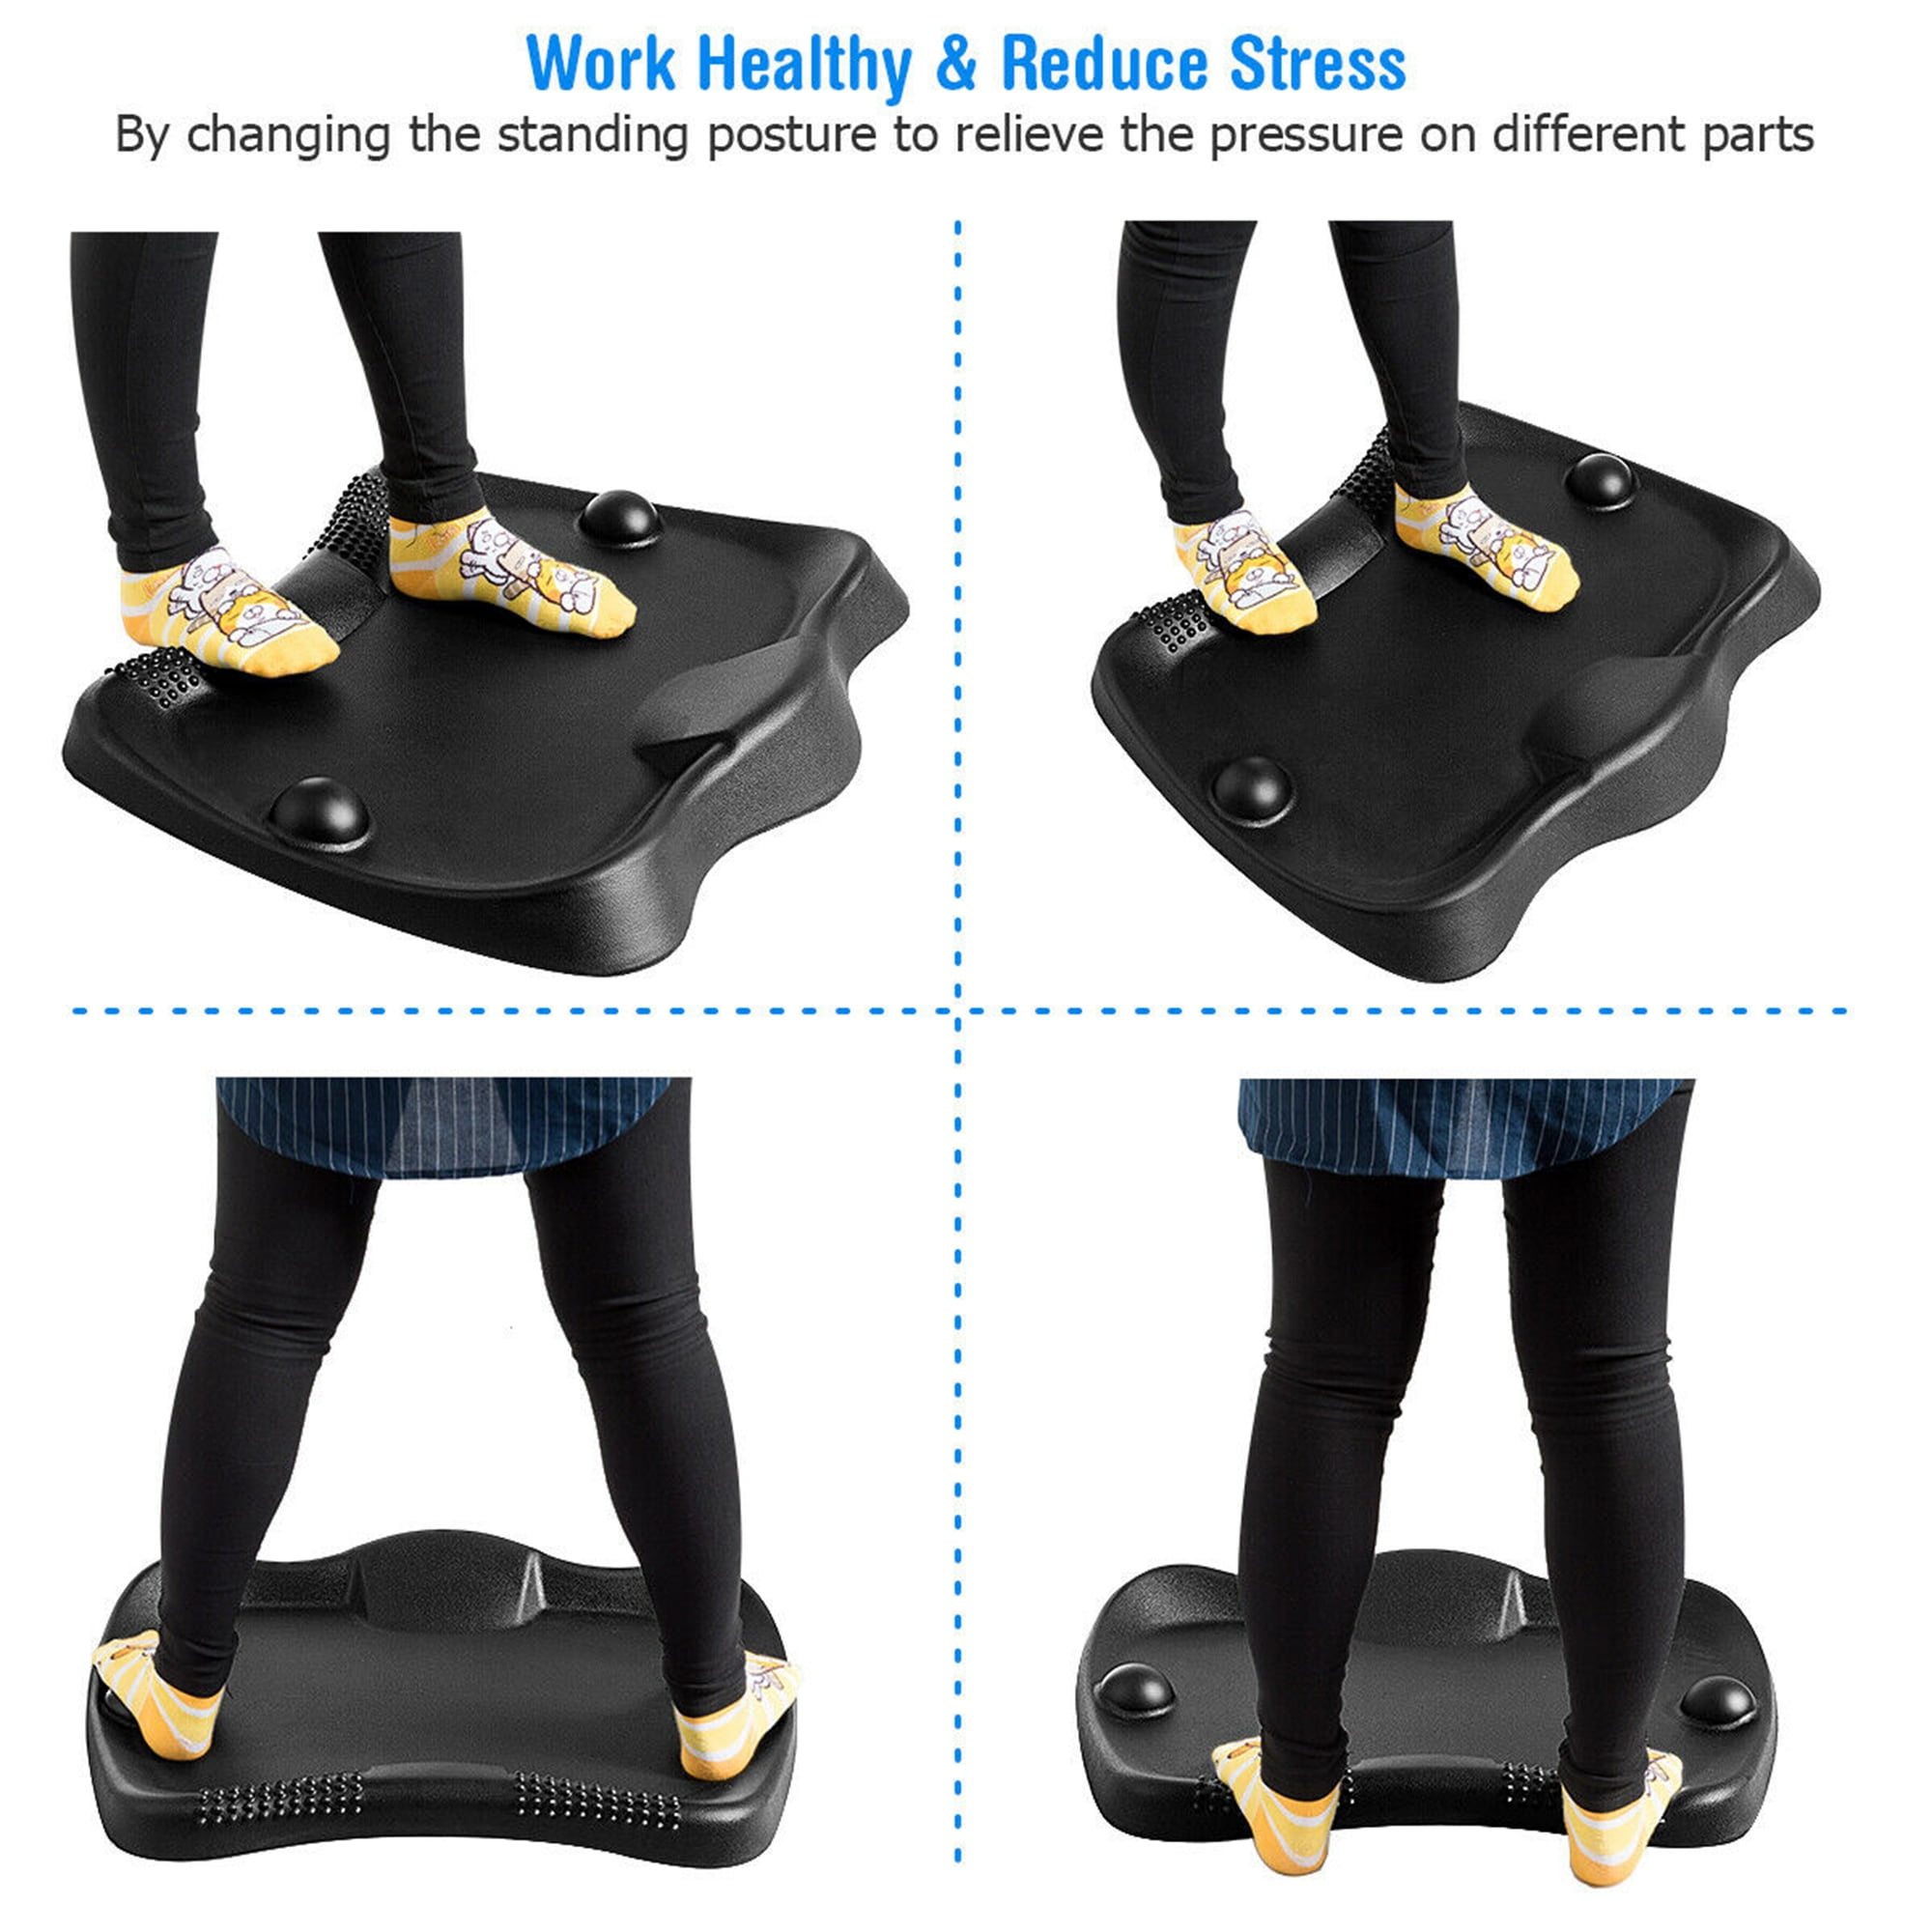 Giantex Anti Fatigue Mat, Not-Flat Comfort Floor Mat with 2 Massage Balls,  Ergonomic Foot Massage Pad for Stand Up Desk, Soft & Durable Standing Desk